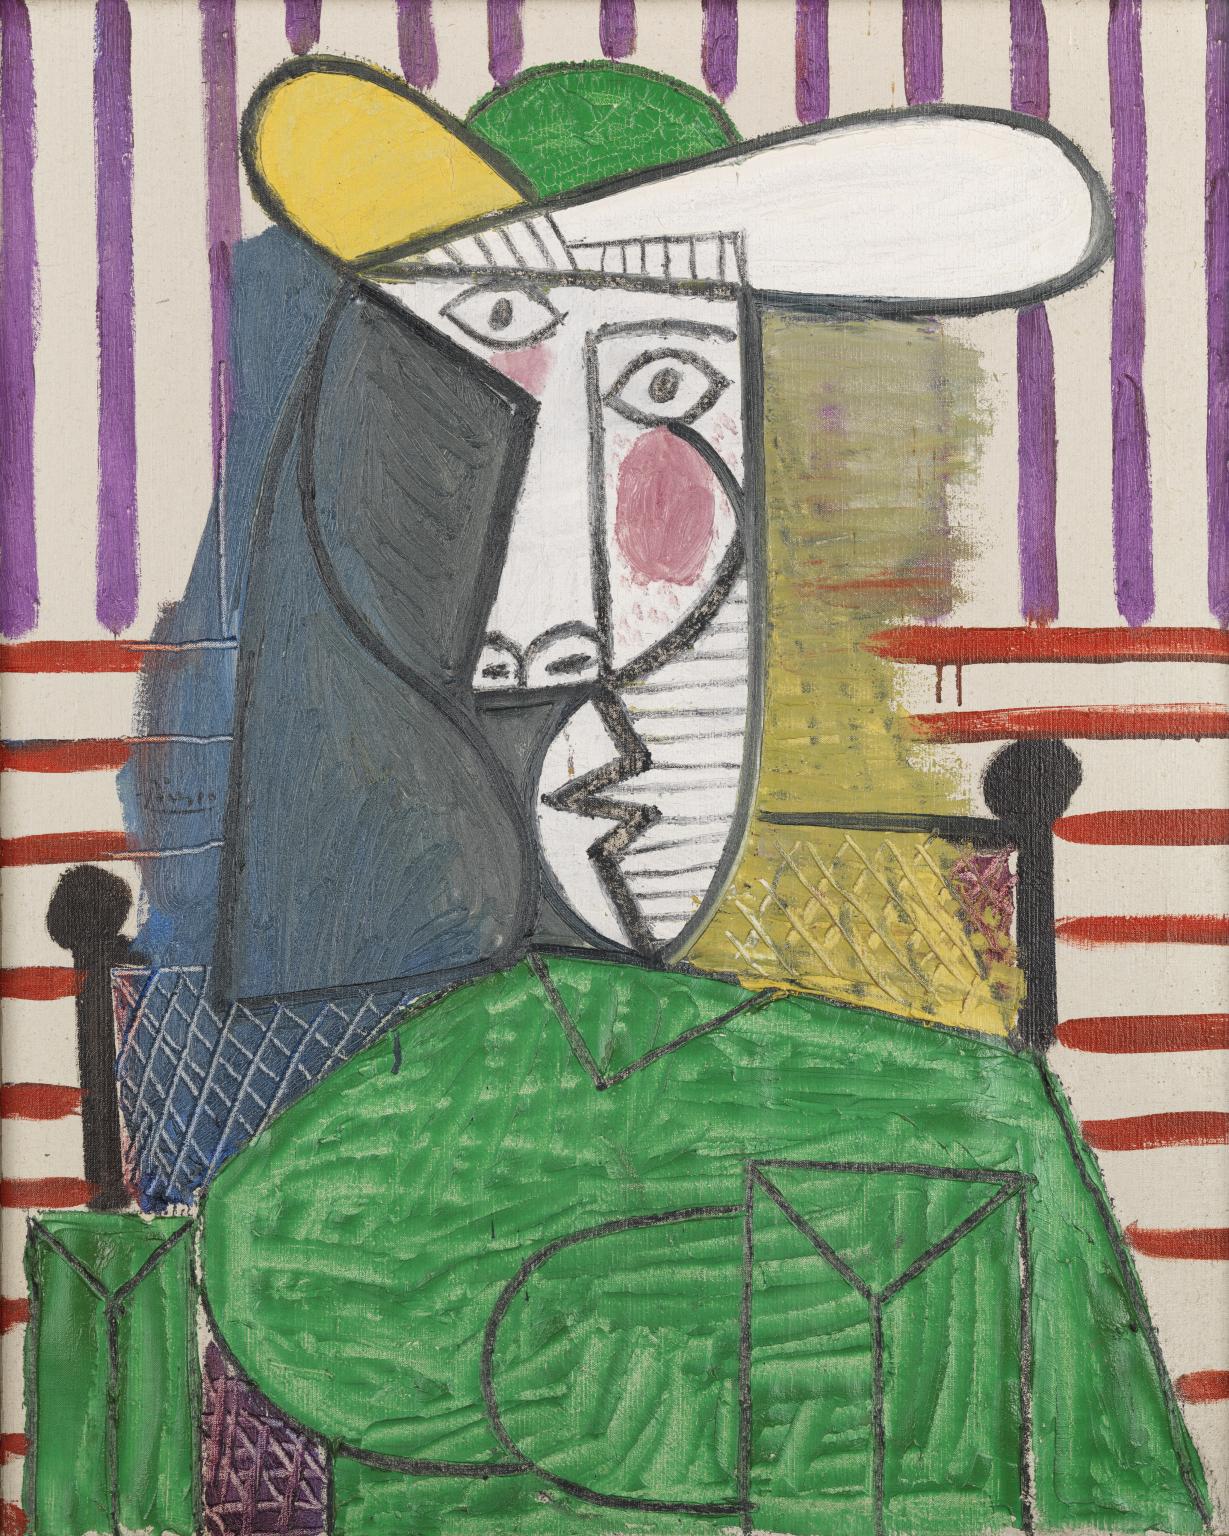 Londra, ventenne sfregia dipinto di Picasso alla Tate Modern